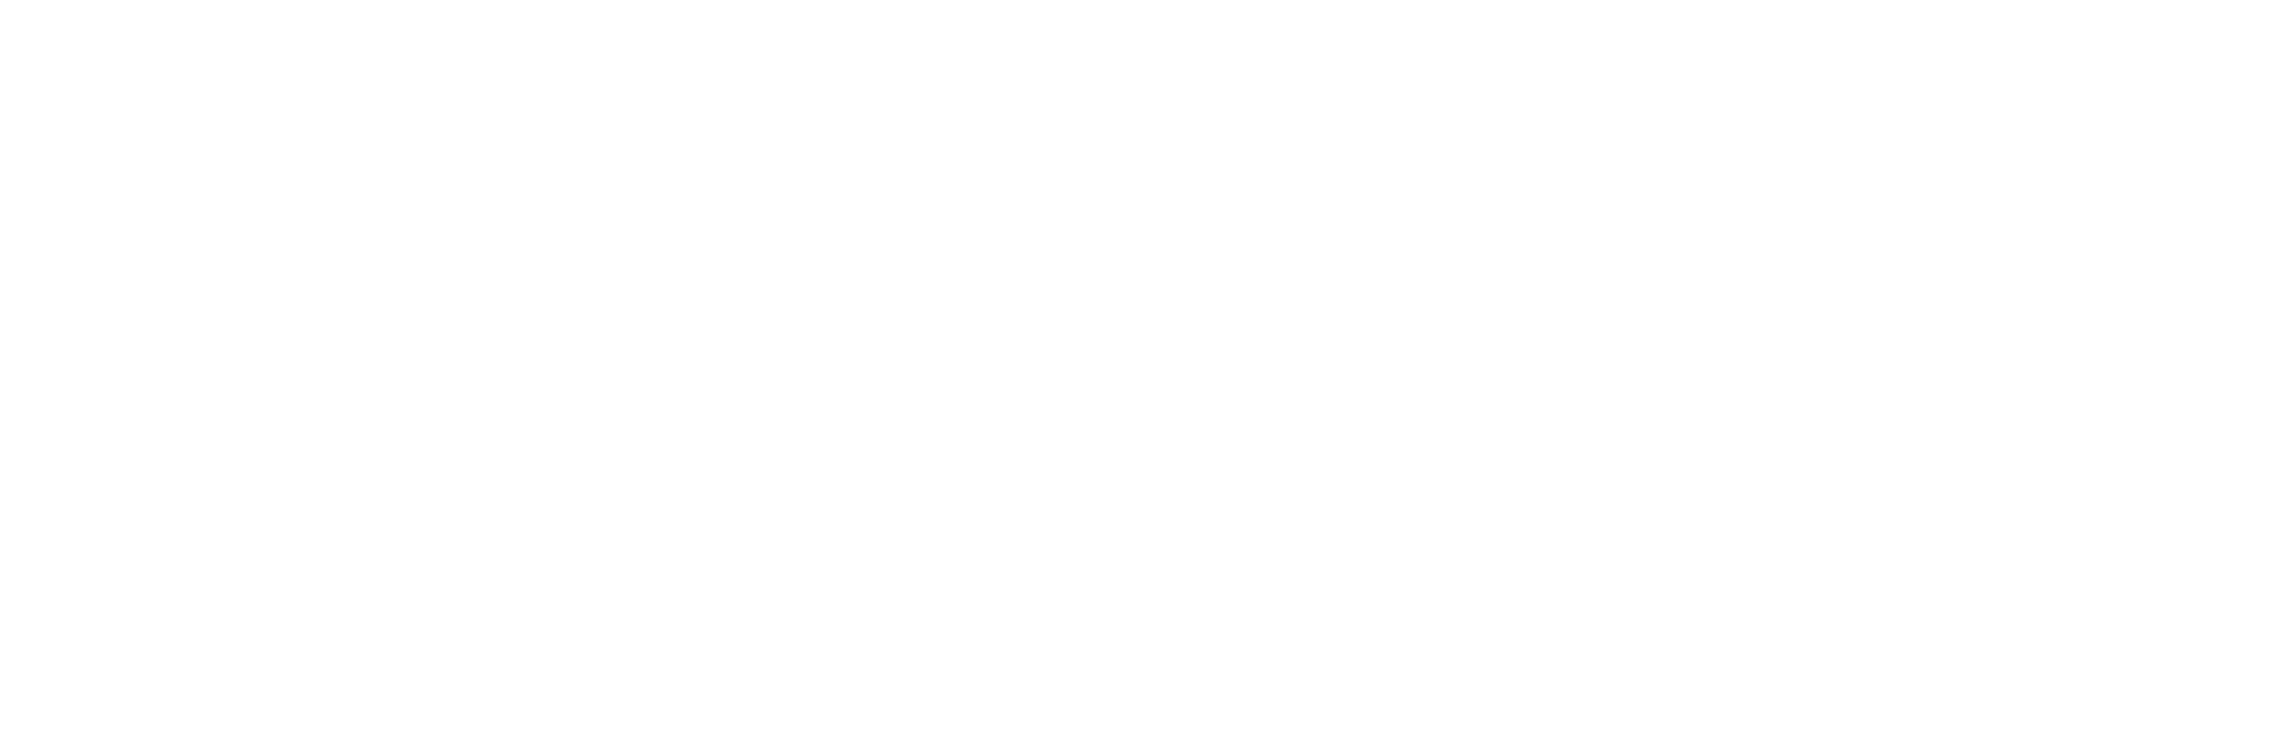 Digital medic logo (2) (1)